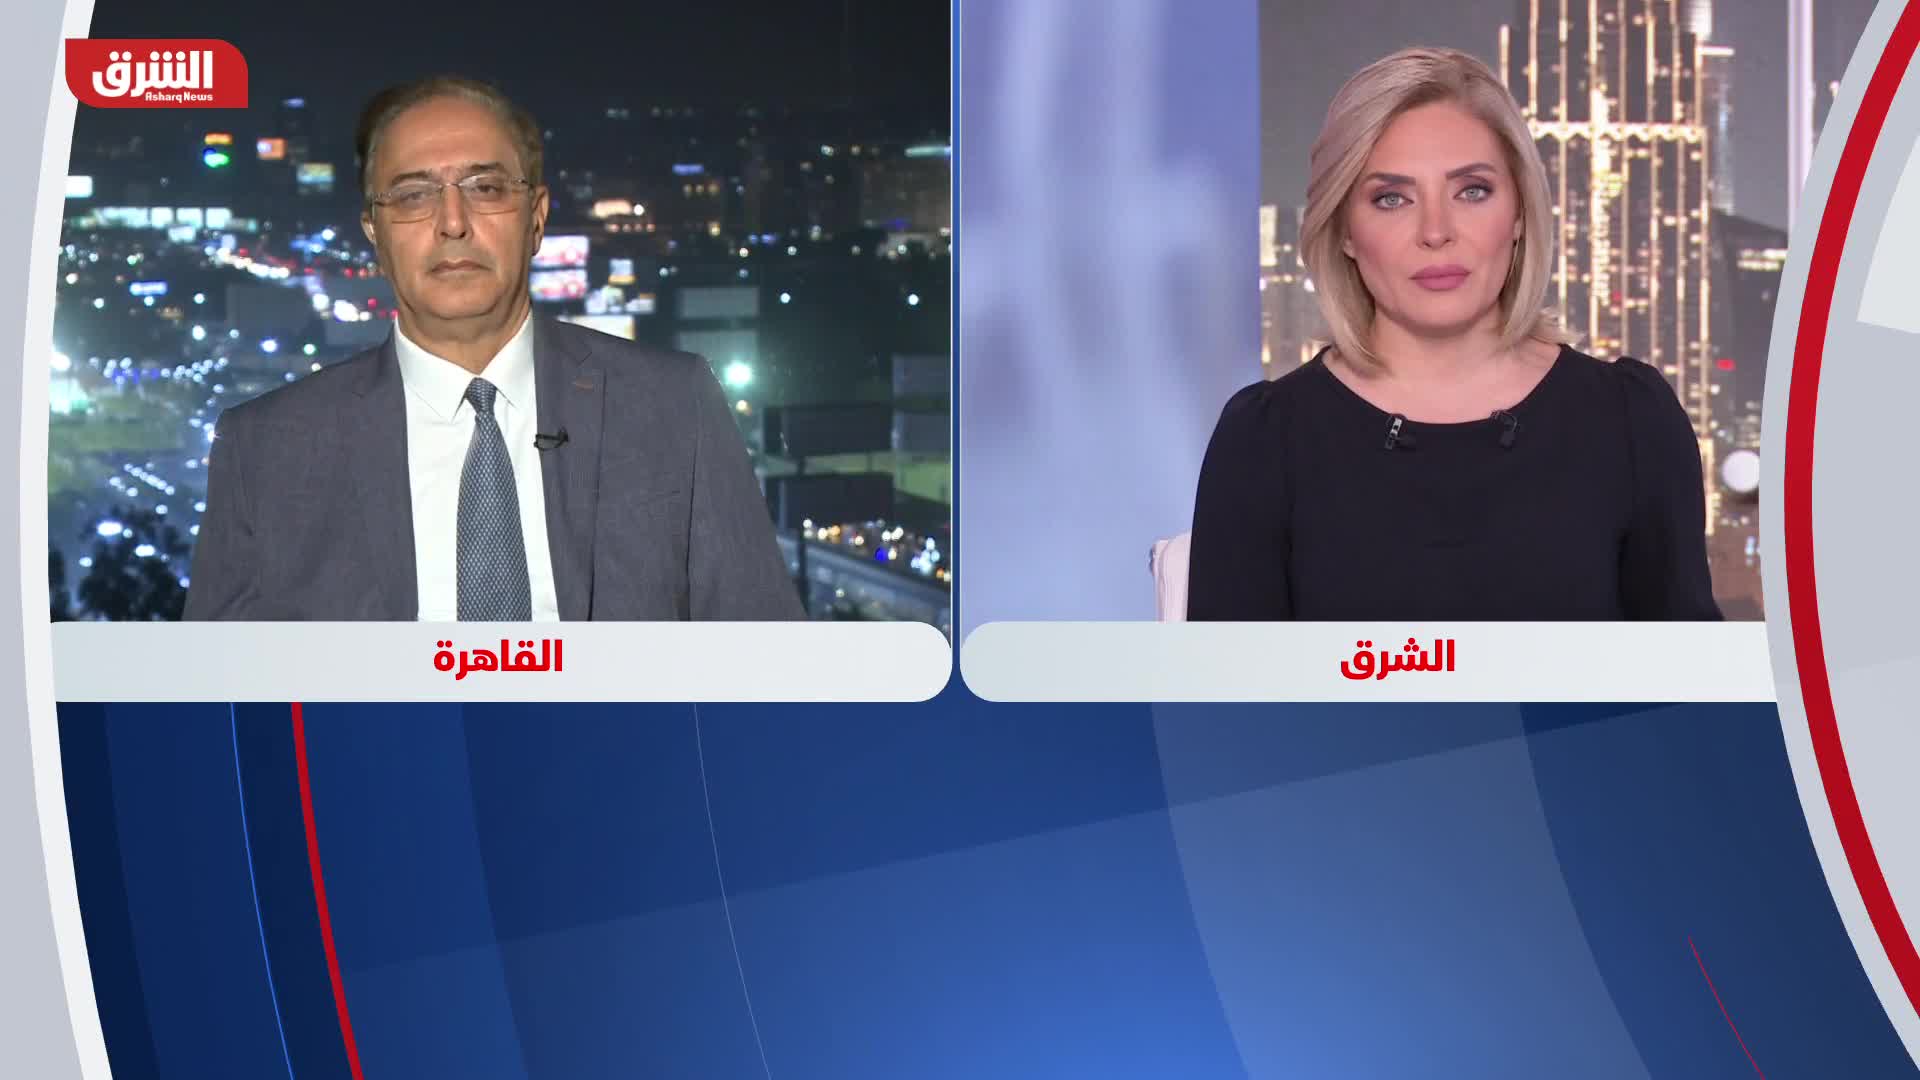 د. سعيد صادق: العلاقات الاقتصاددية بين تركيا ومصر لم تتأثر بالخلافات السياسية